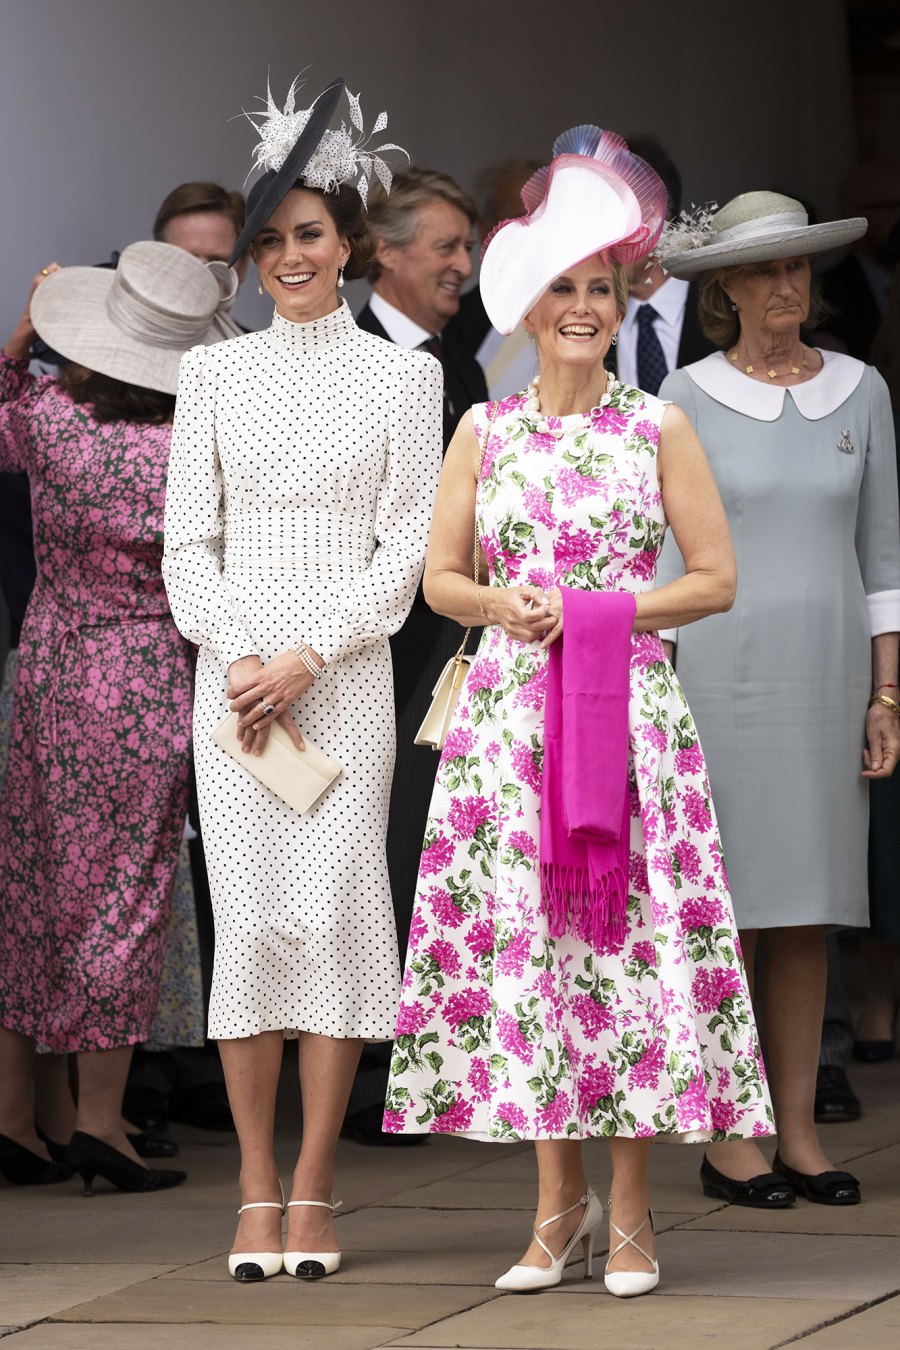 Kate Middleton Wears Polka Dot Dress for Order of the Garter: Pics